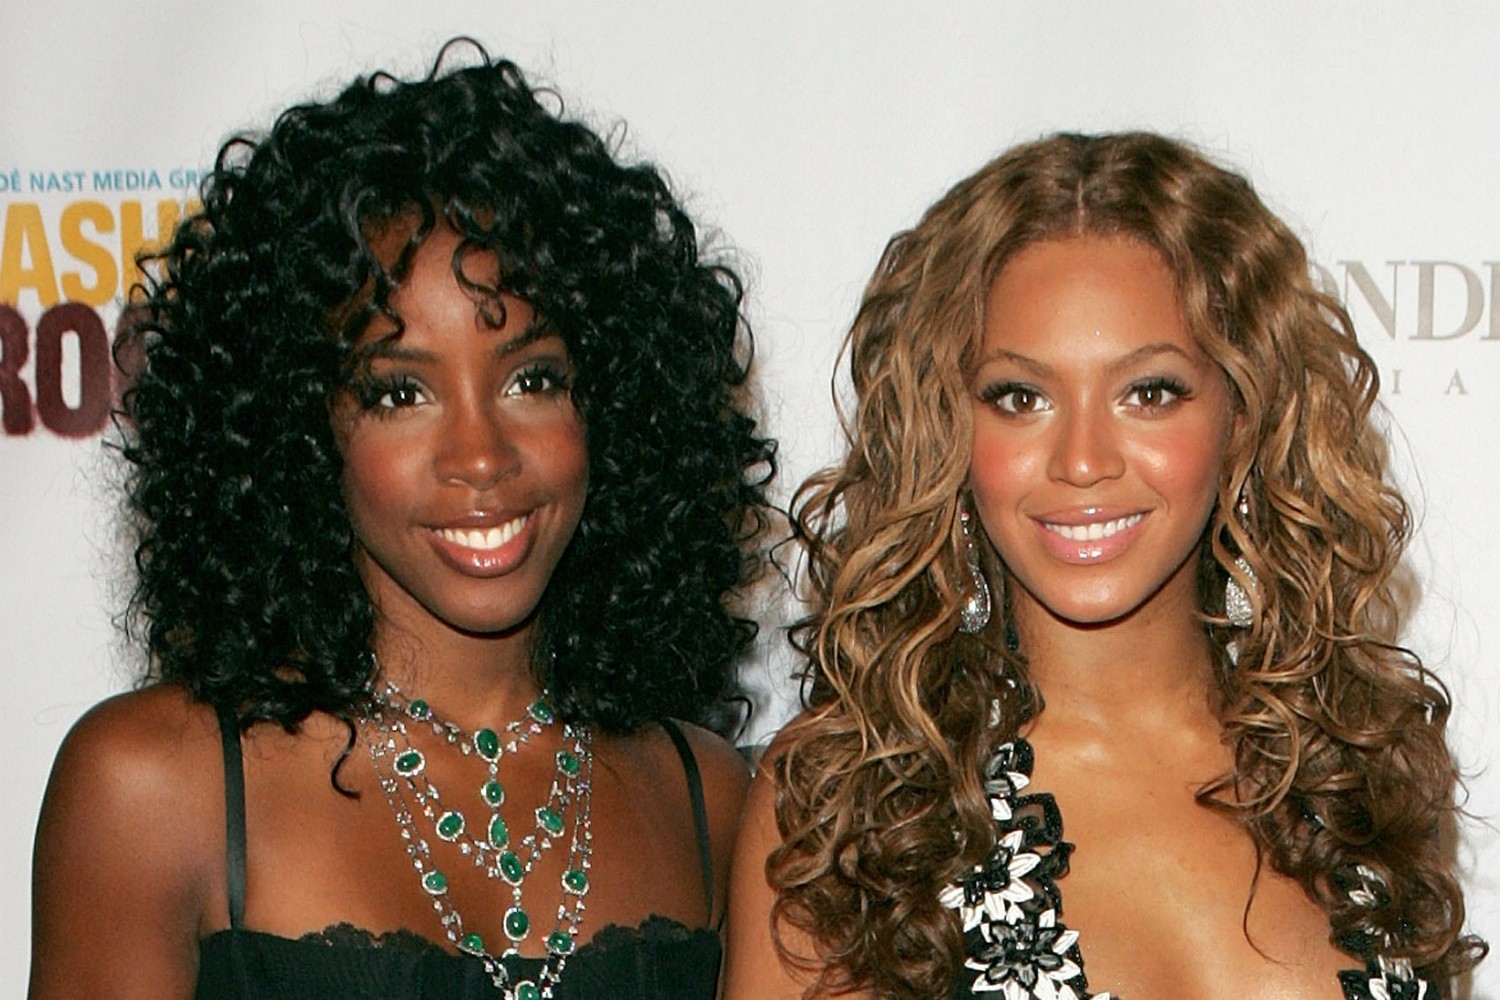 Antes juntas no grupo Destiny's Child (1990-2006), hoje Beyoncé e Kelly Rowland têm várias diferenças. Rowland fez até uma música, 